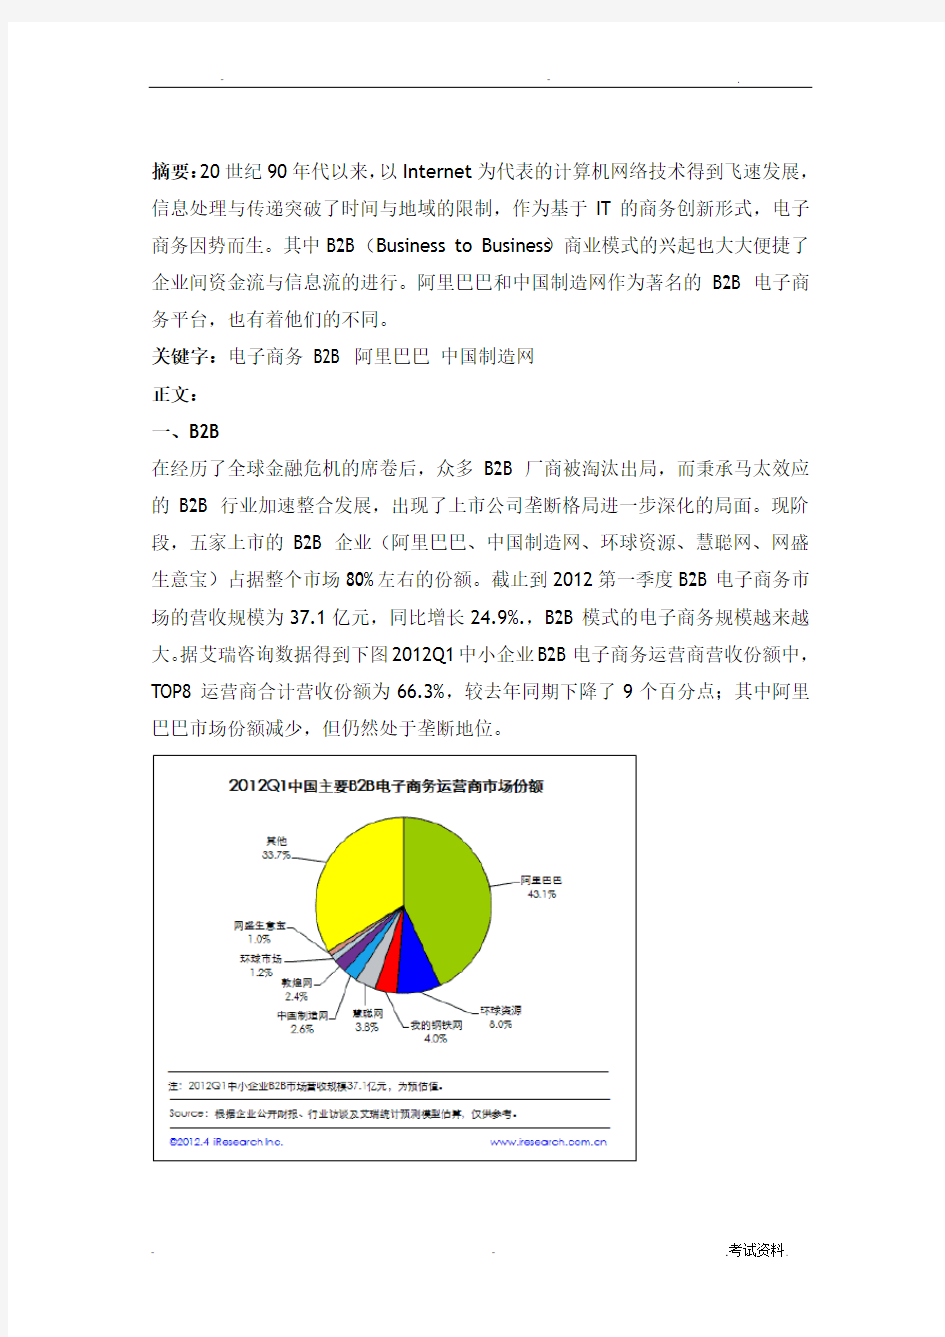 阿里巴巴与中国制造网的比较研究报告